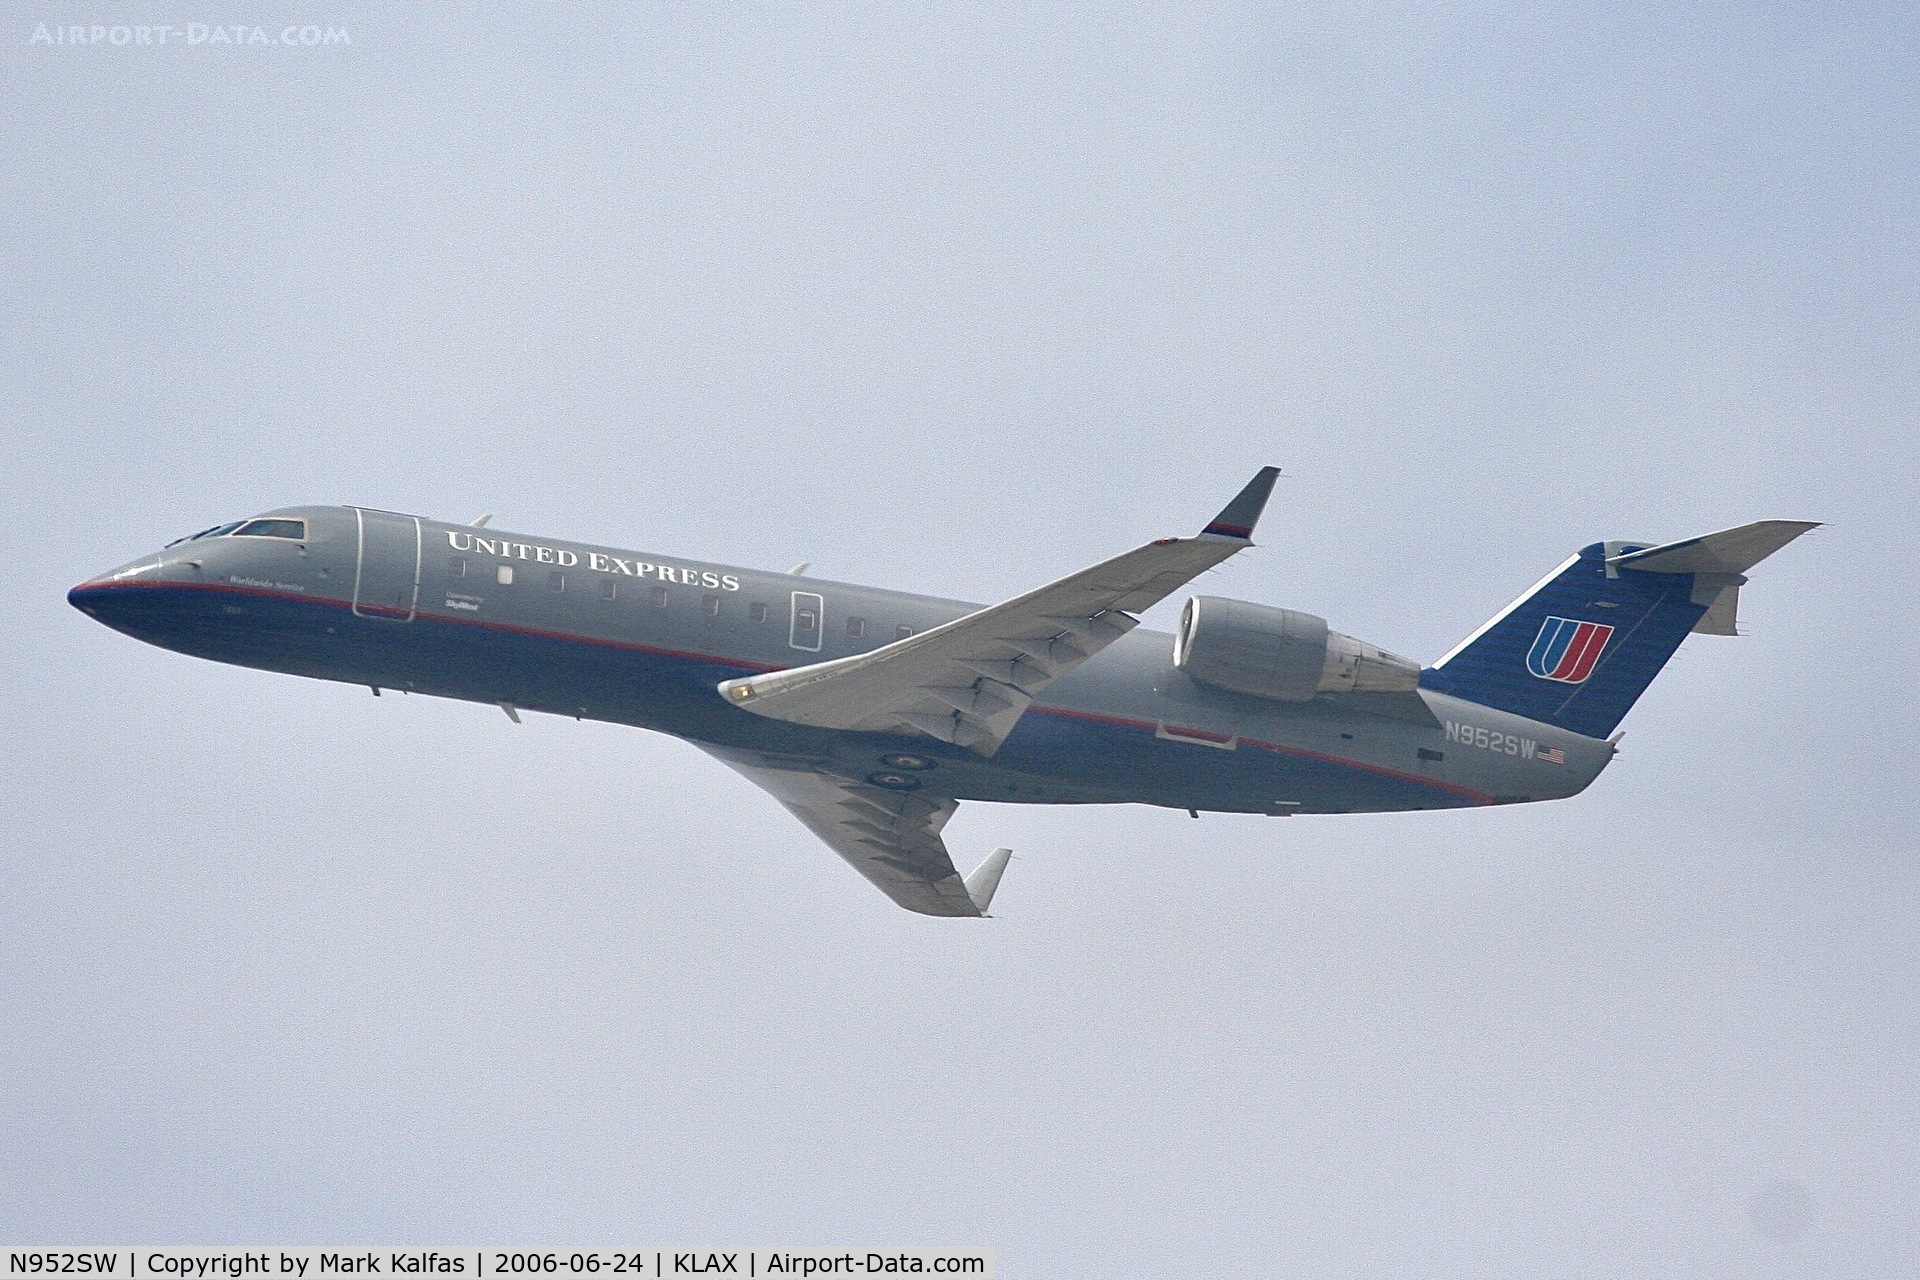 N952SW, 2003 Bombardier CRJ-200LR (CL-600-2B19) C/N 7805, SkyWest United Express Bombardier CRJ-200LR, N952SW departing 25R LAX